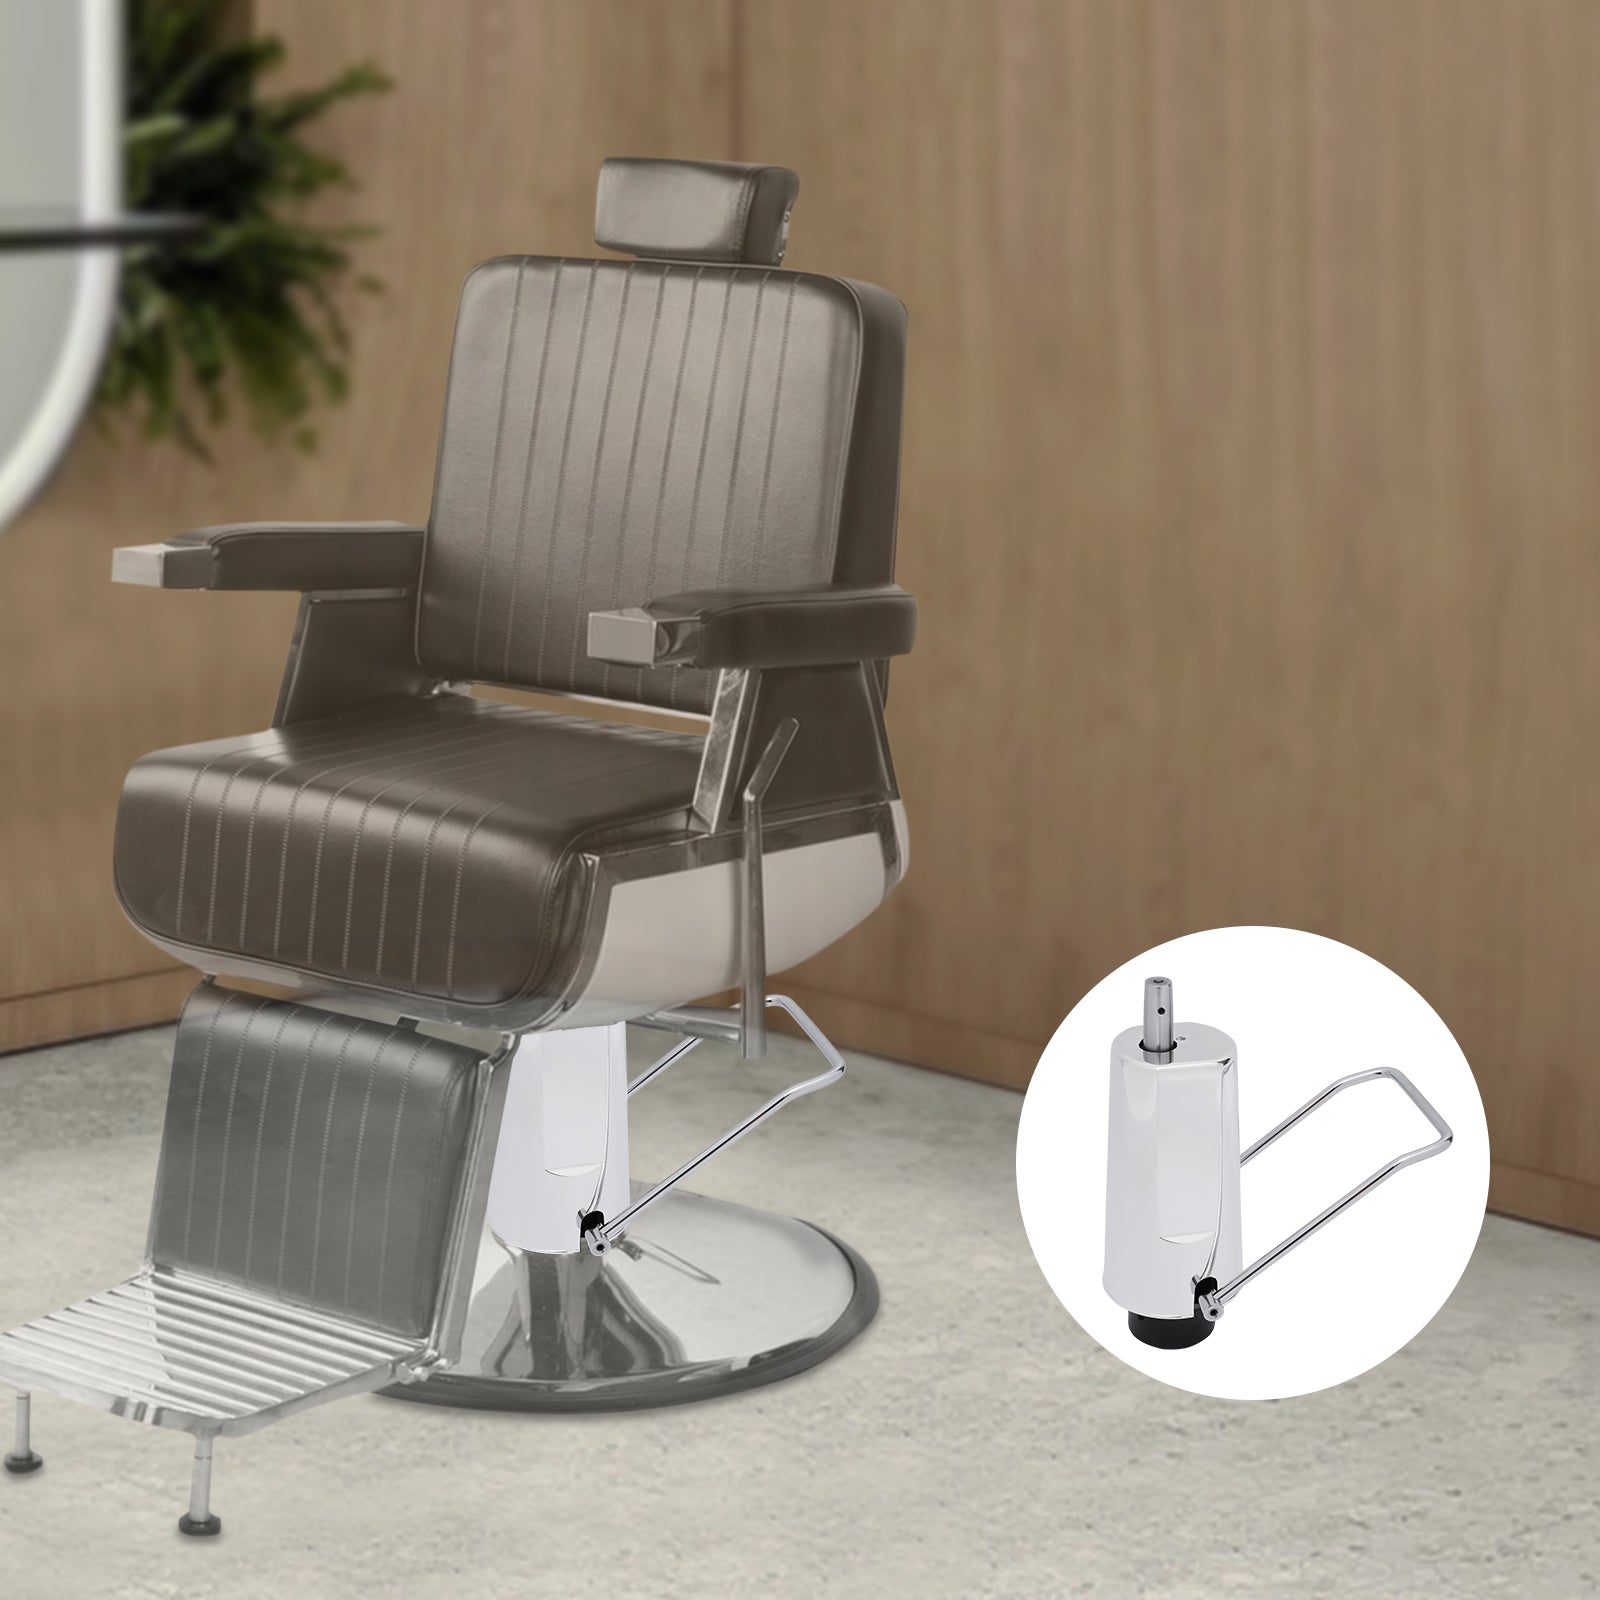 4,3" 4 vis de rechange pour fauteuil de coiffeur - Pompe hydraulique - Modèle réglable - Argenté